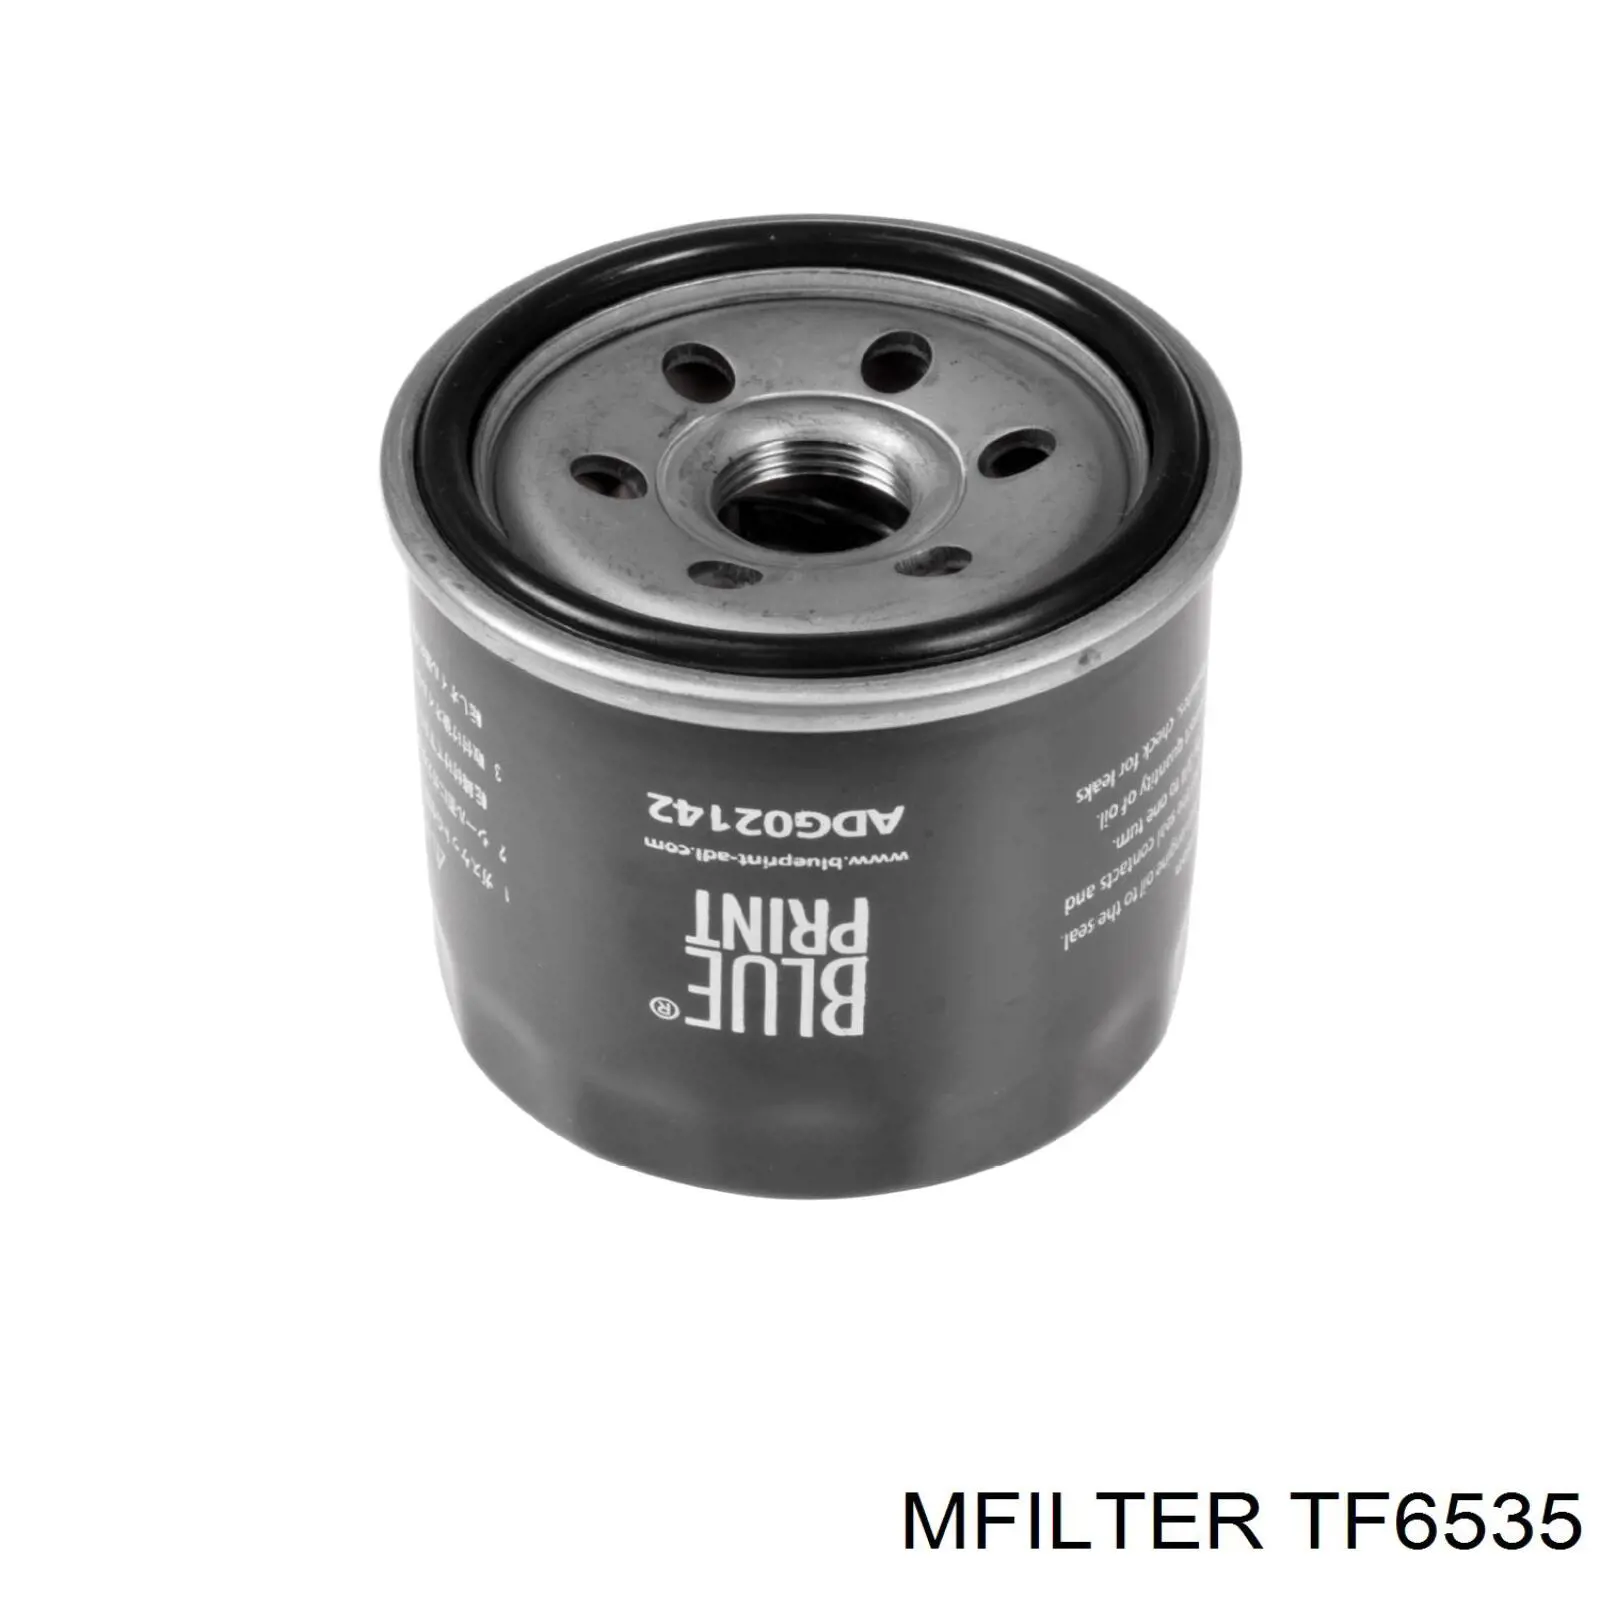 TF6535 Mfilter filtro de aceite